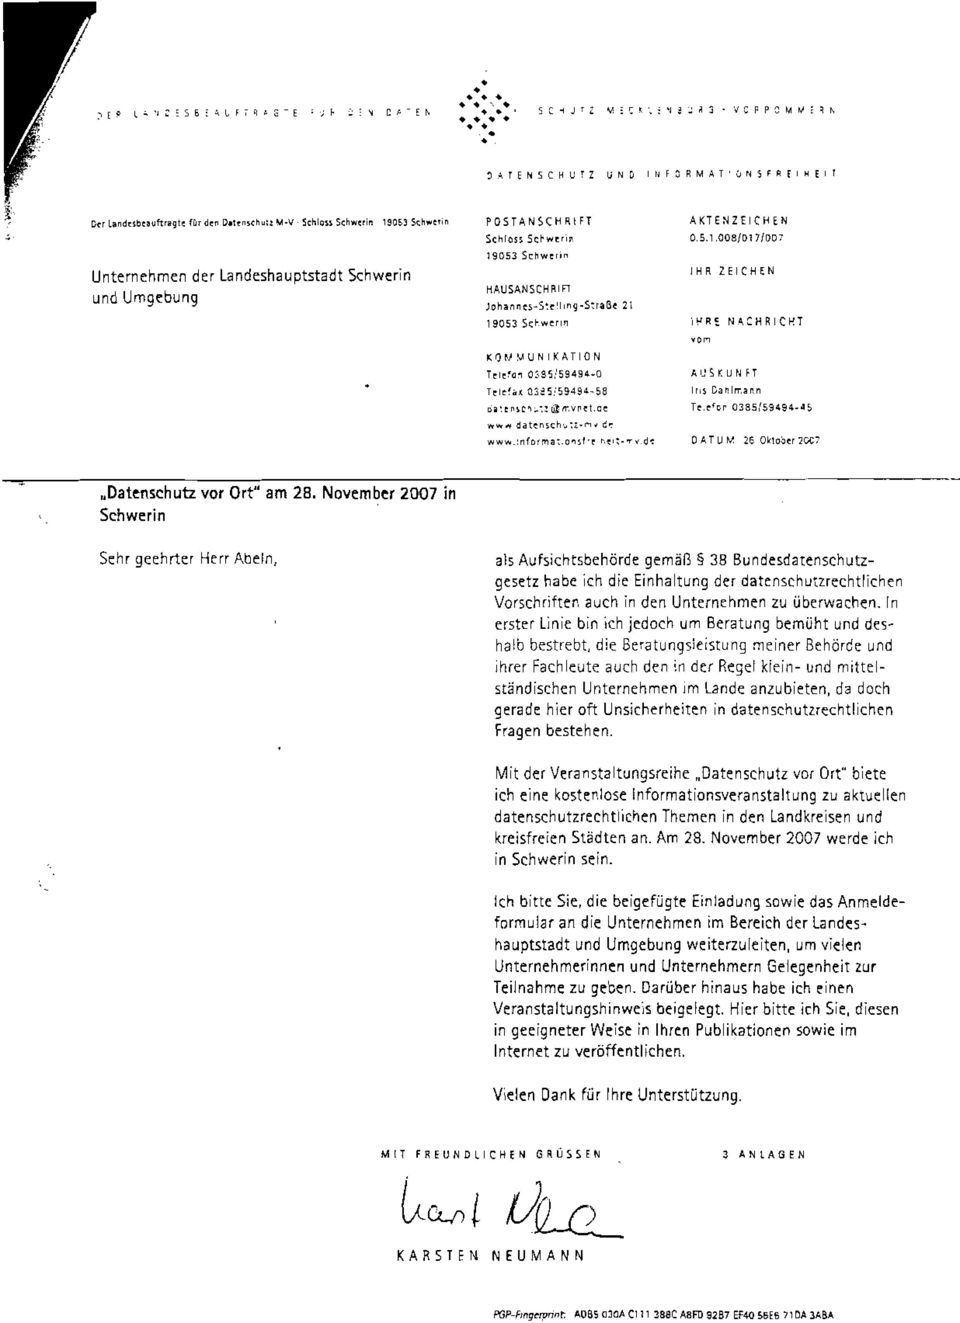 November 2007 in Schwerin Sehr geehrter Herr Abein, als Aufsichtsbehörde gemäß 38 Bundesdatenschutzgesetz habe ich die Einhaltung der datenschutzrechtlichen Vorschrifter, auch in den Unternehmen zu